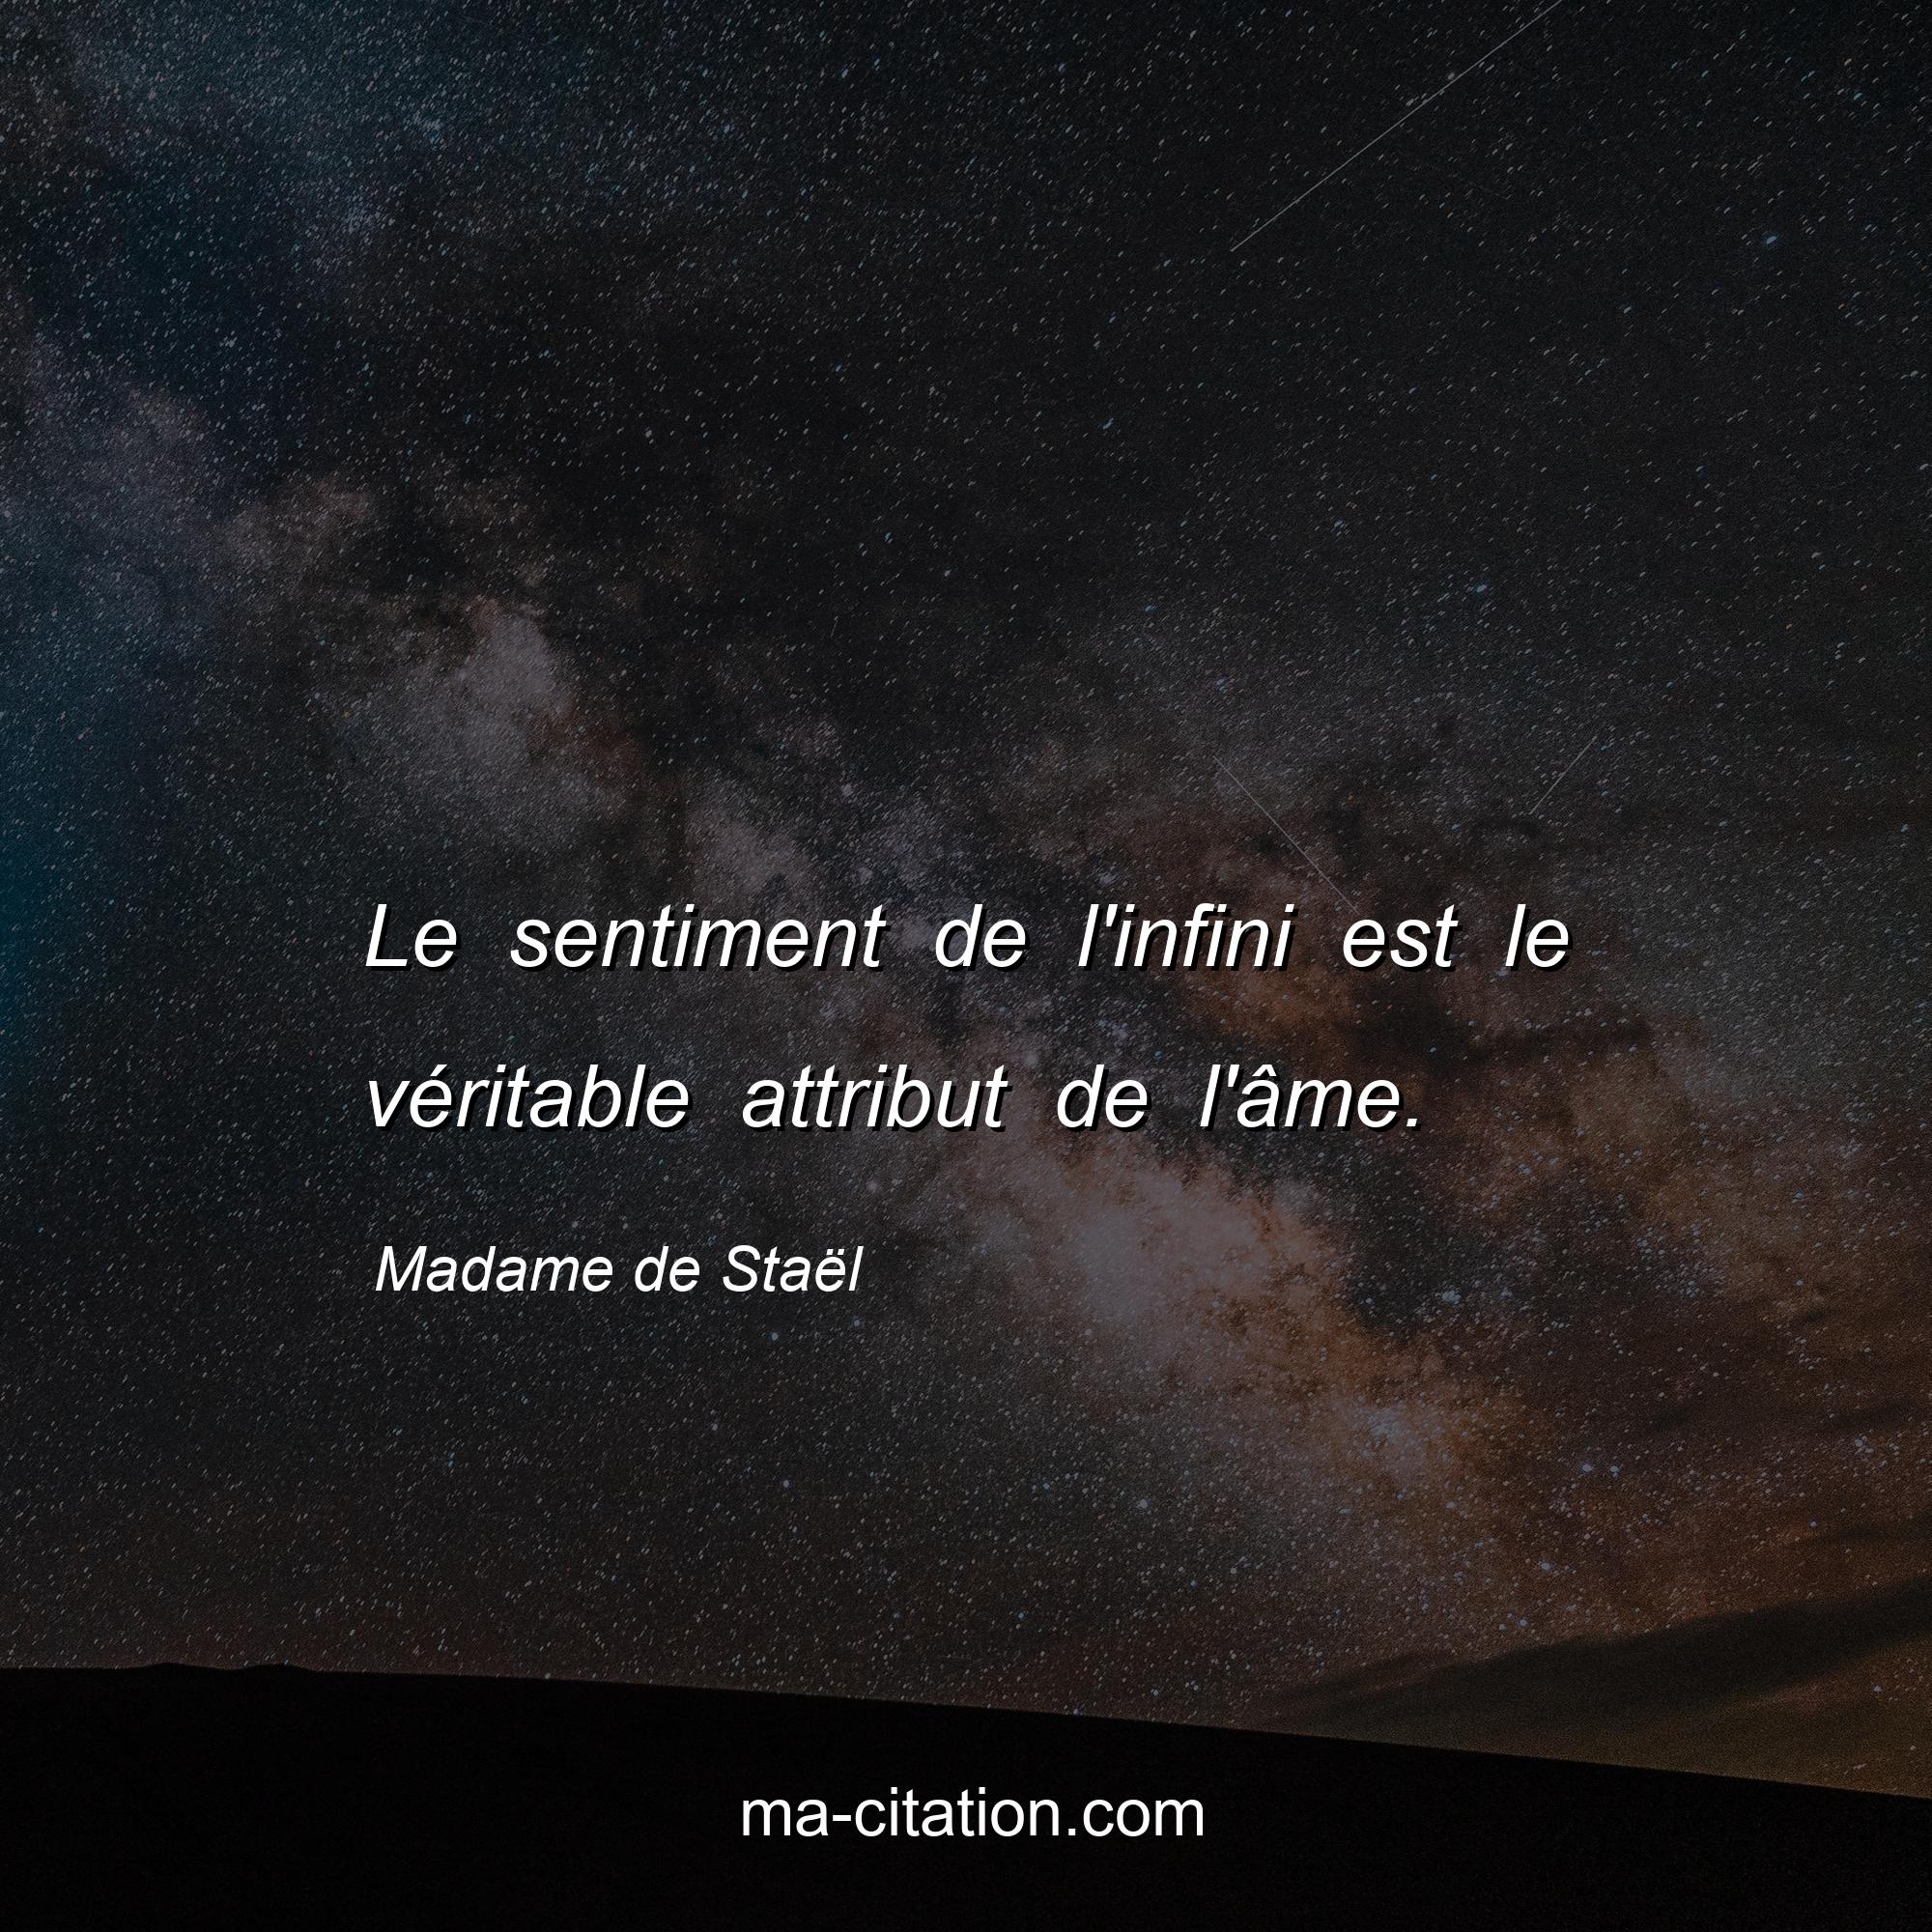 Madame de Staël : Le sentiment de l'infini est le véritable attribut de l'âme.